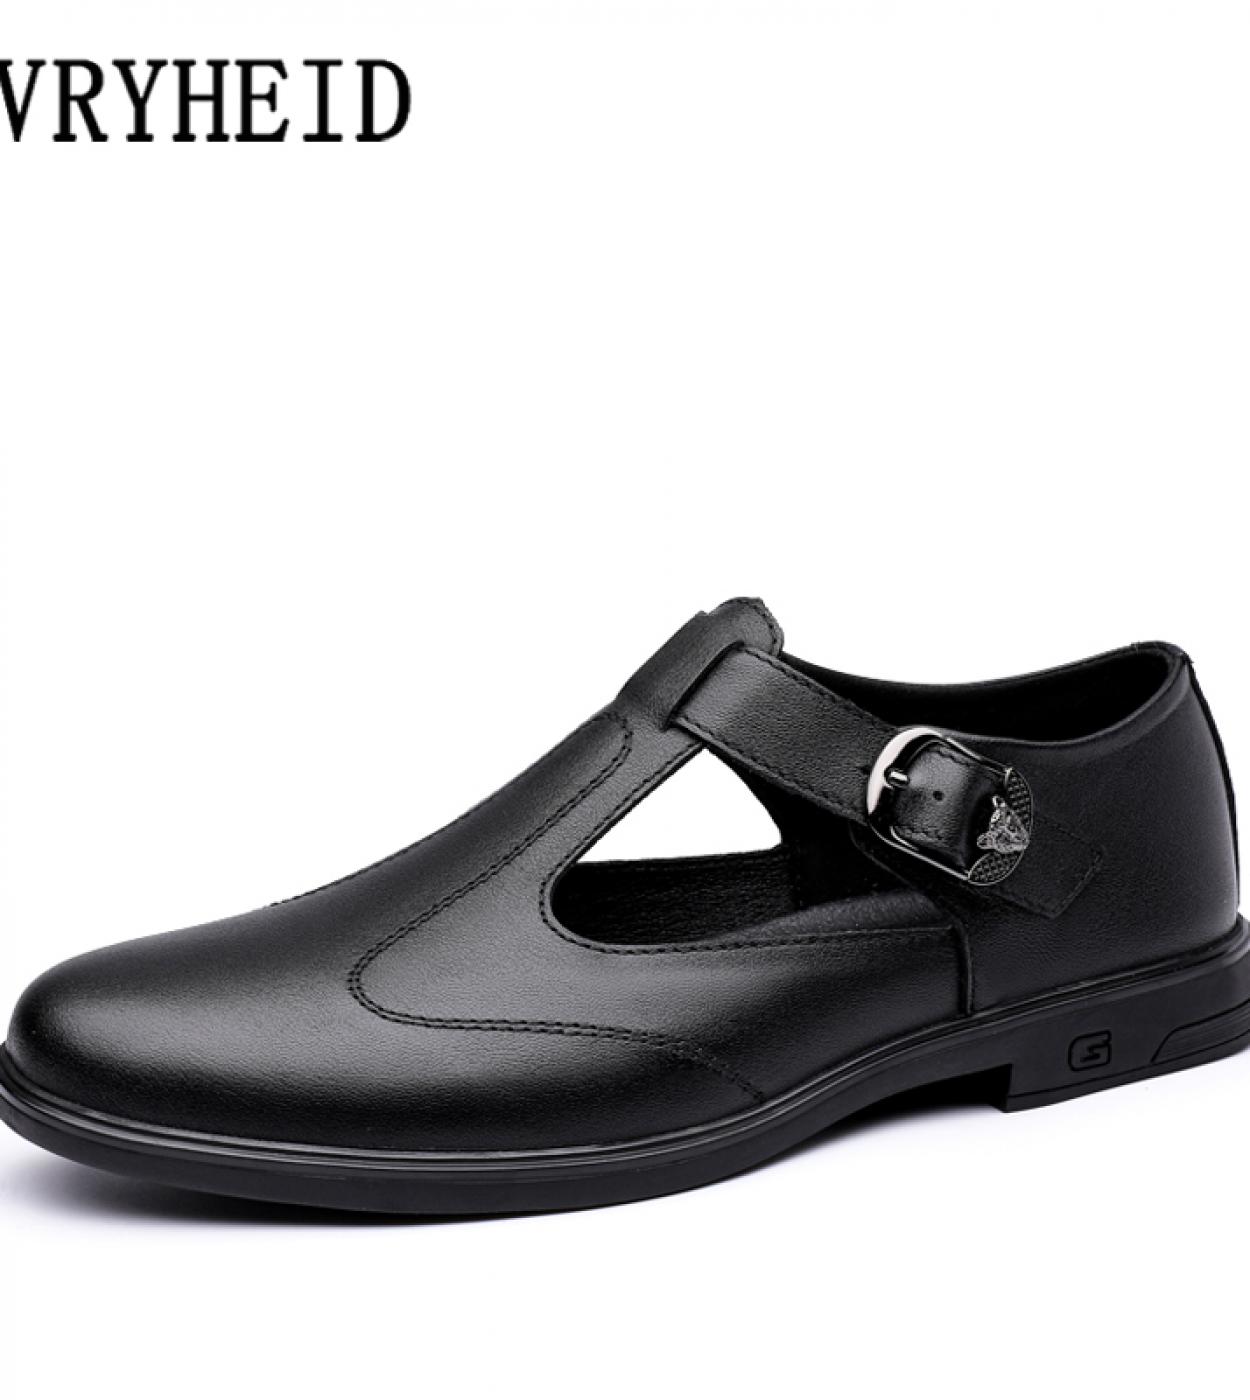 Vryheid, sandalias de verano de cuero genuino para hombre, zapatos casuales transpirables para playa al aire libre para hombre, 